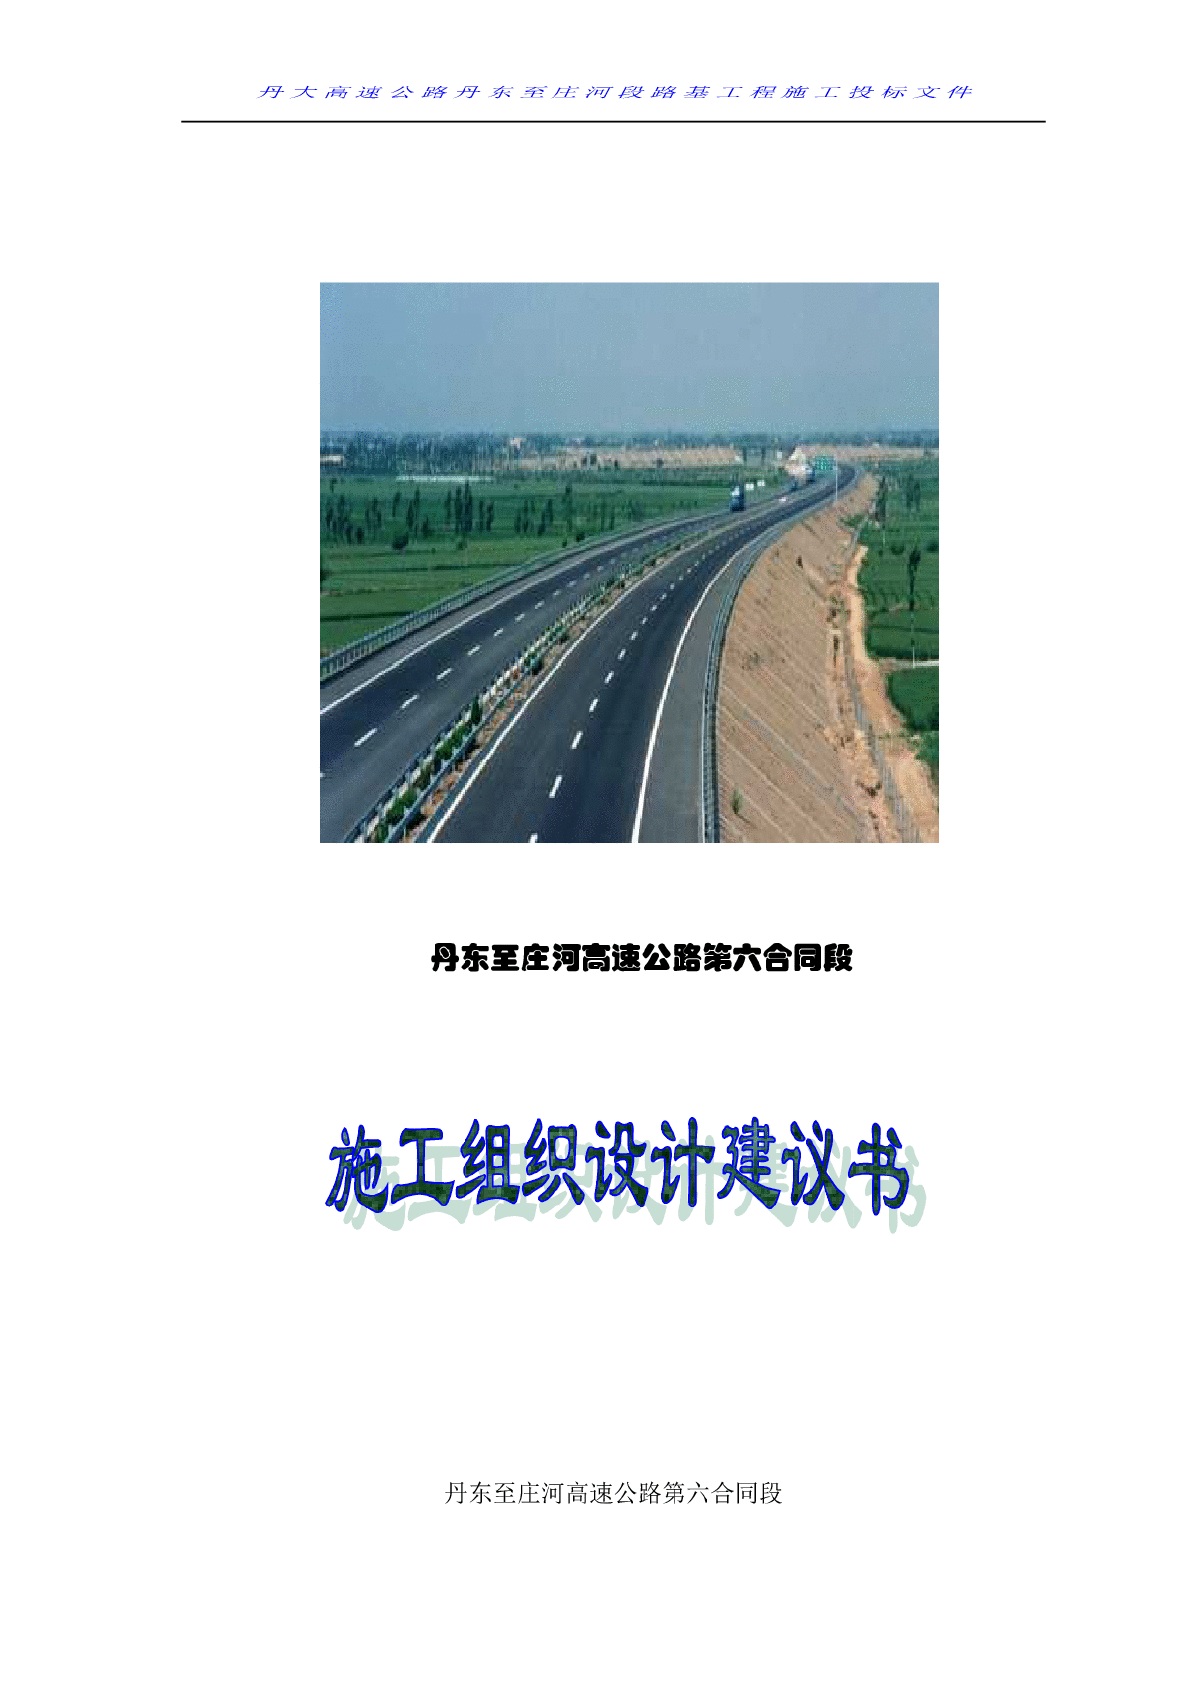 丹庄高速公路路基桥涵工程6标投标施工组织设计建议书-图二